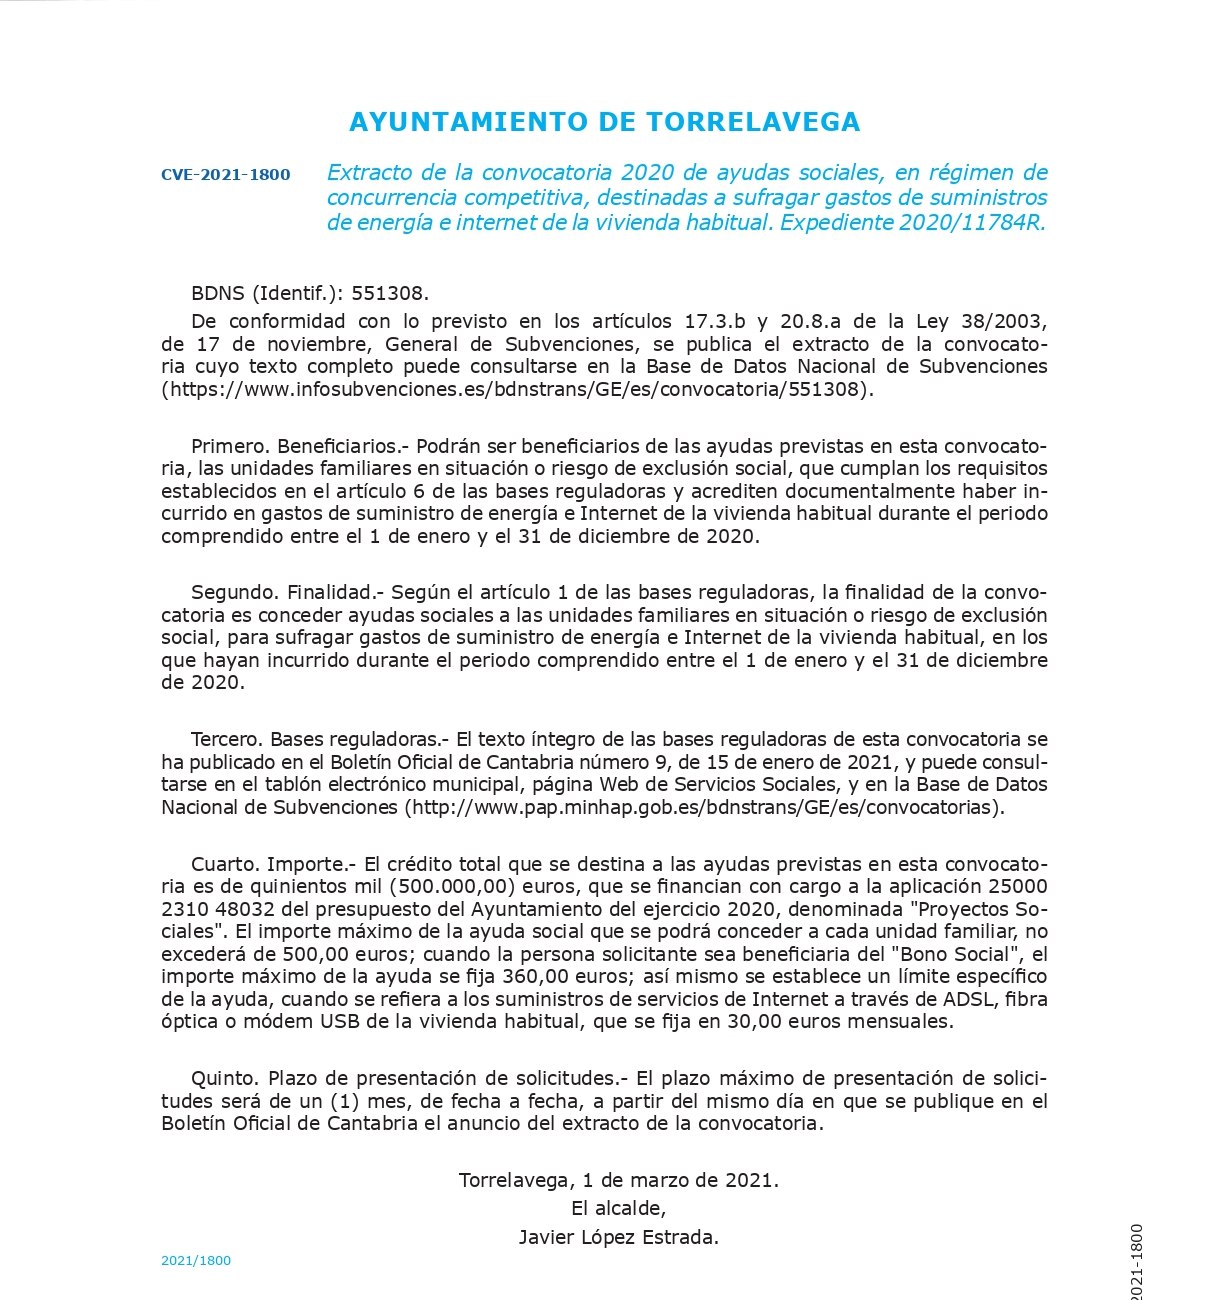  Torrelavega abre el plazo para solicitar ayudas para suministros de energía e Internet de la vivienda habitual